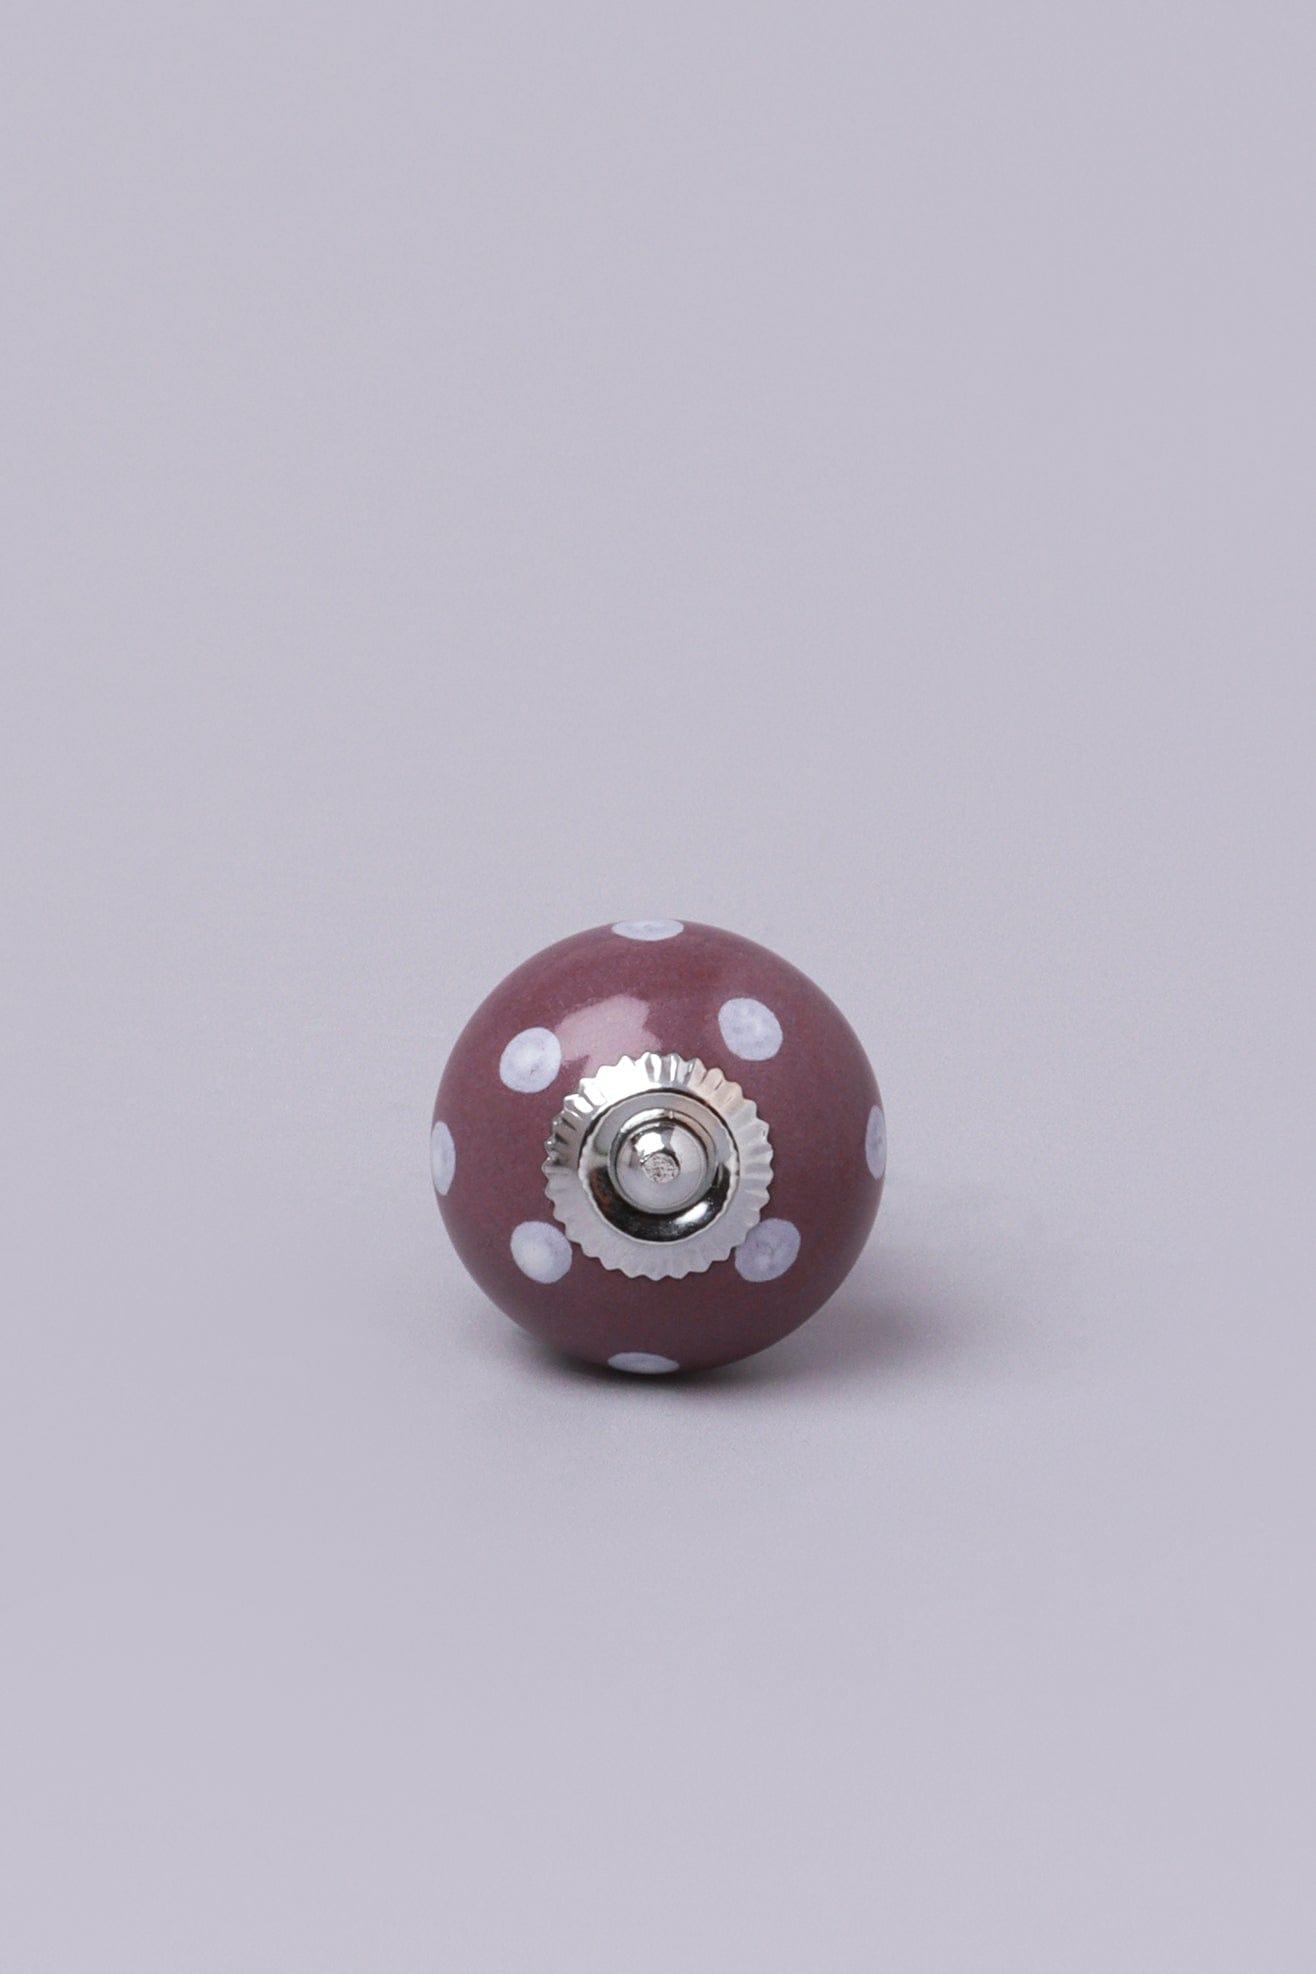 G Decor Door Knobs & Handles Purple Polka Dot Ceramic Door Knobs Cupboard Pull Door Handles